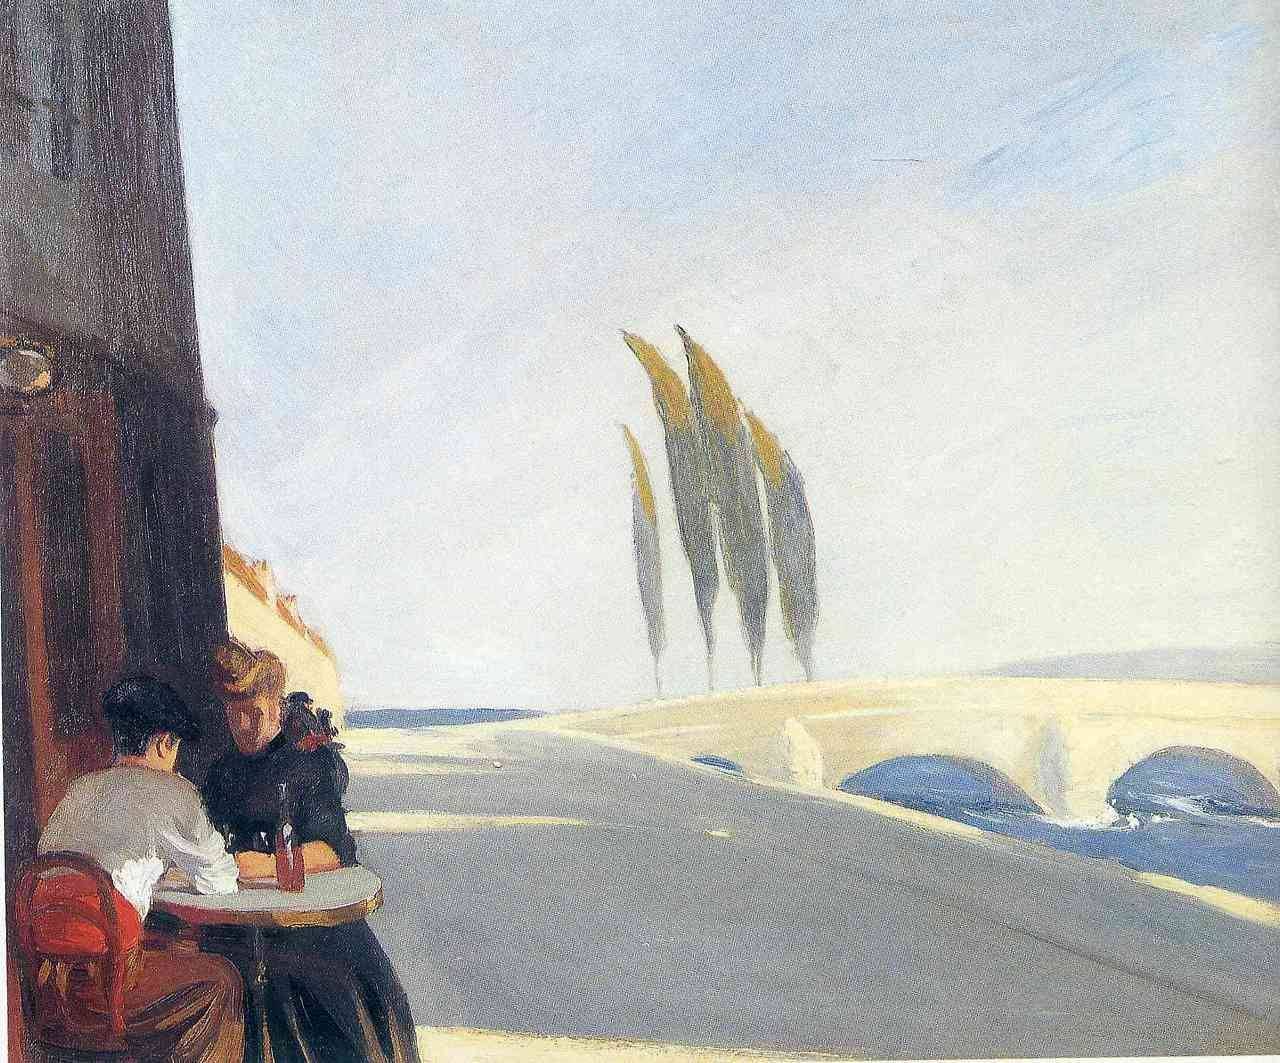 De Bistro (The Wine Shop) by Edward Hopper - 1909 